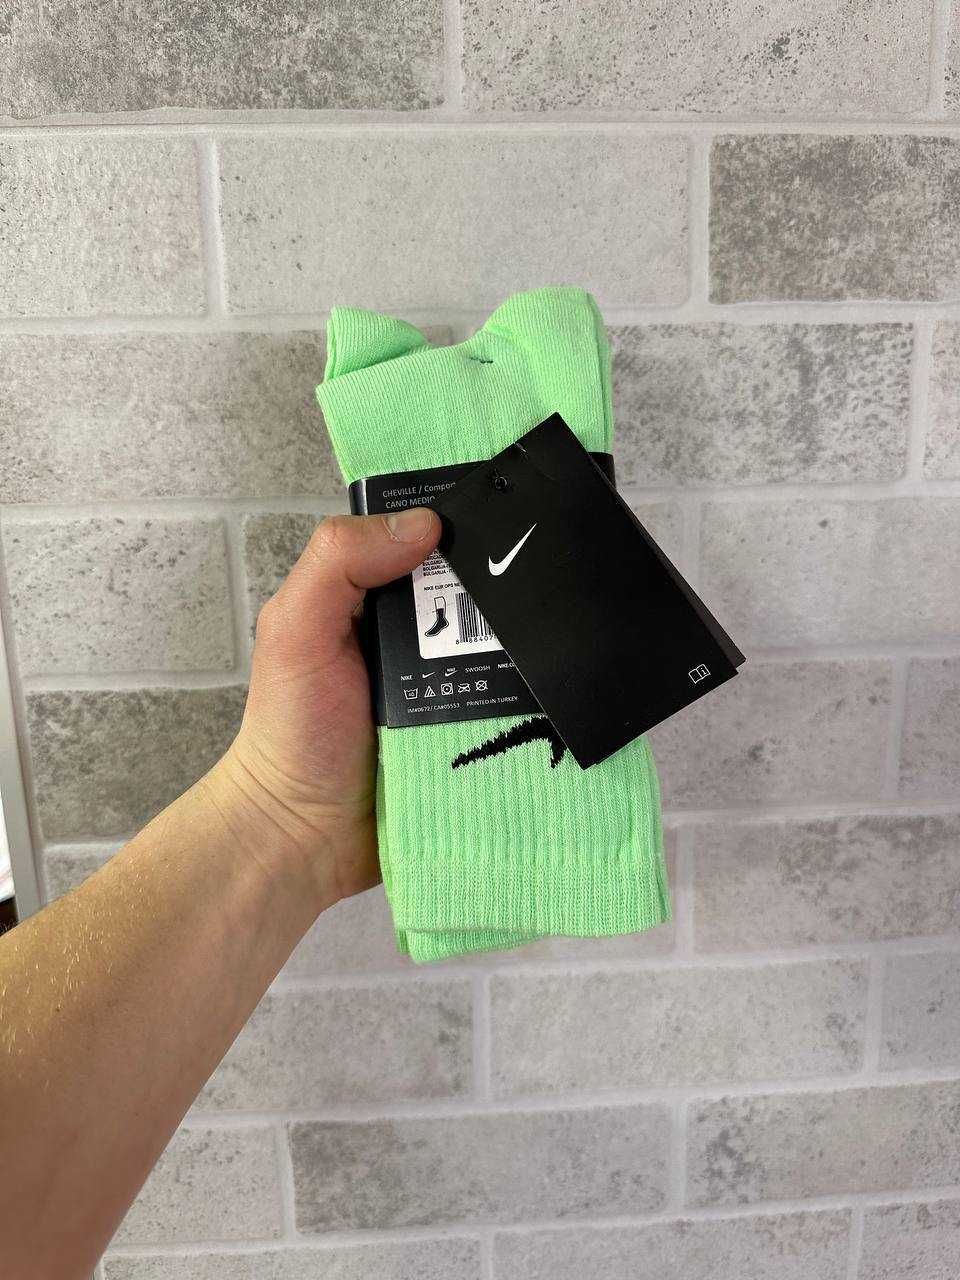 Продам оригінальні носки "Nike"